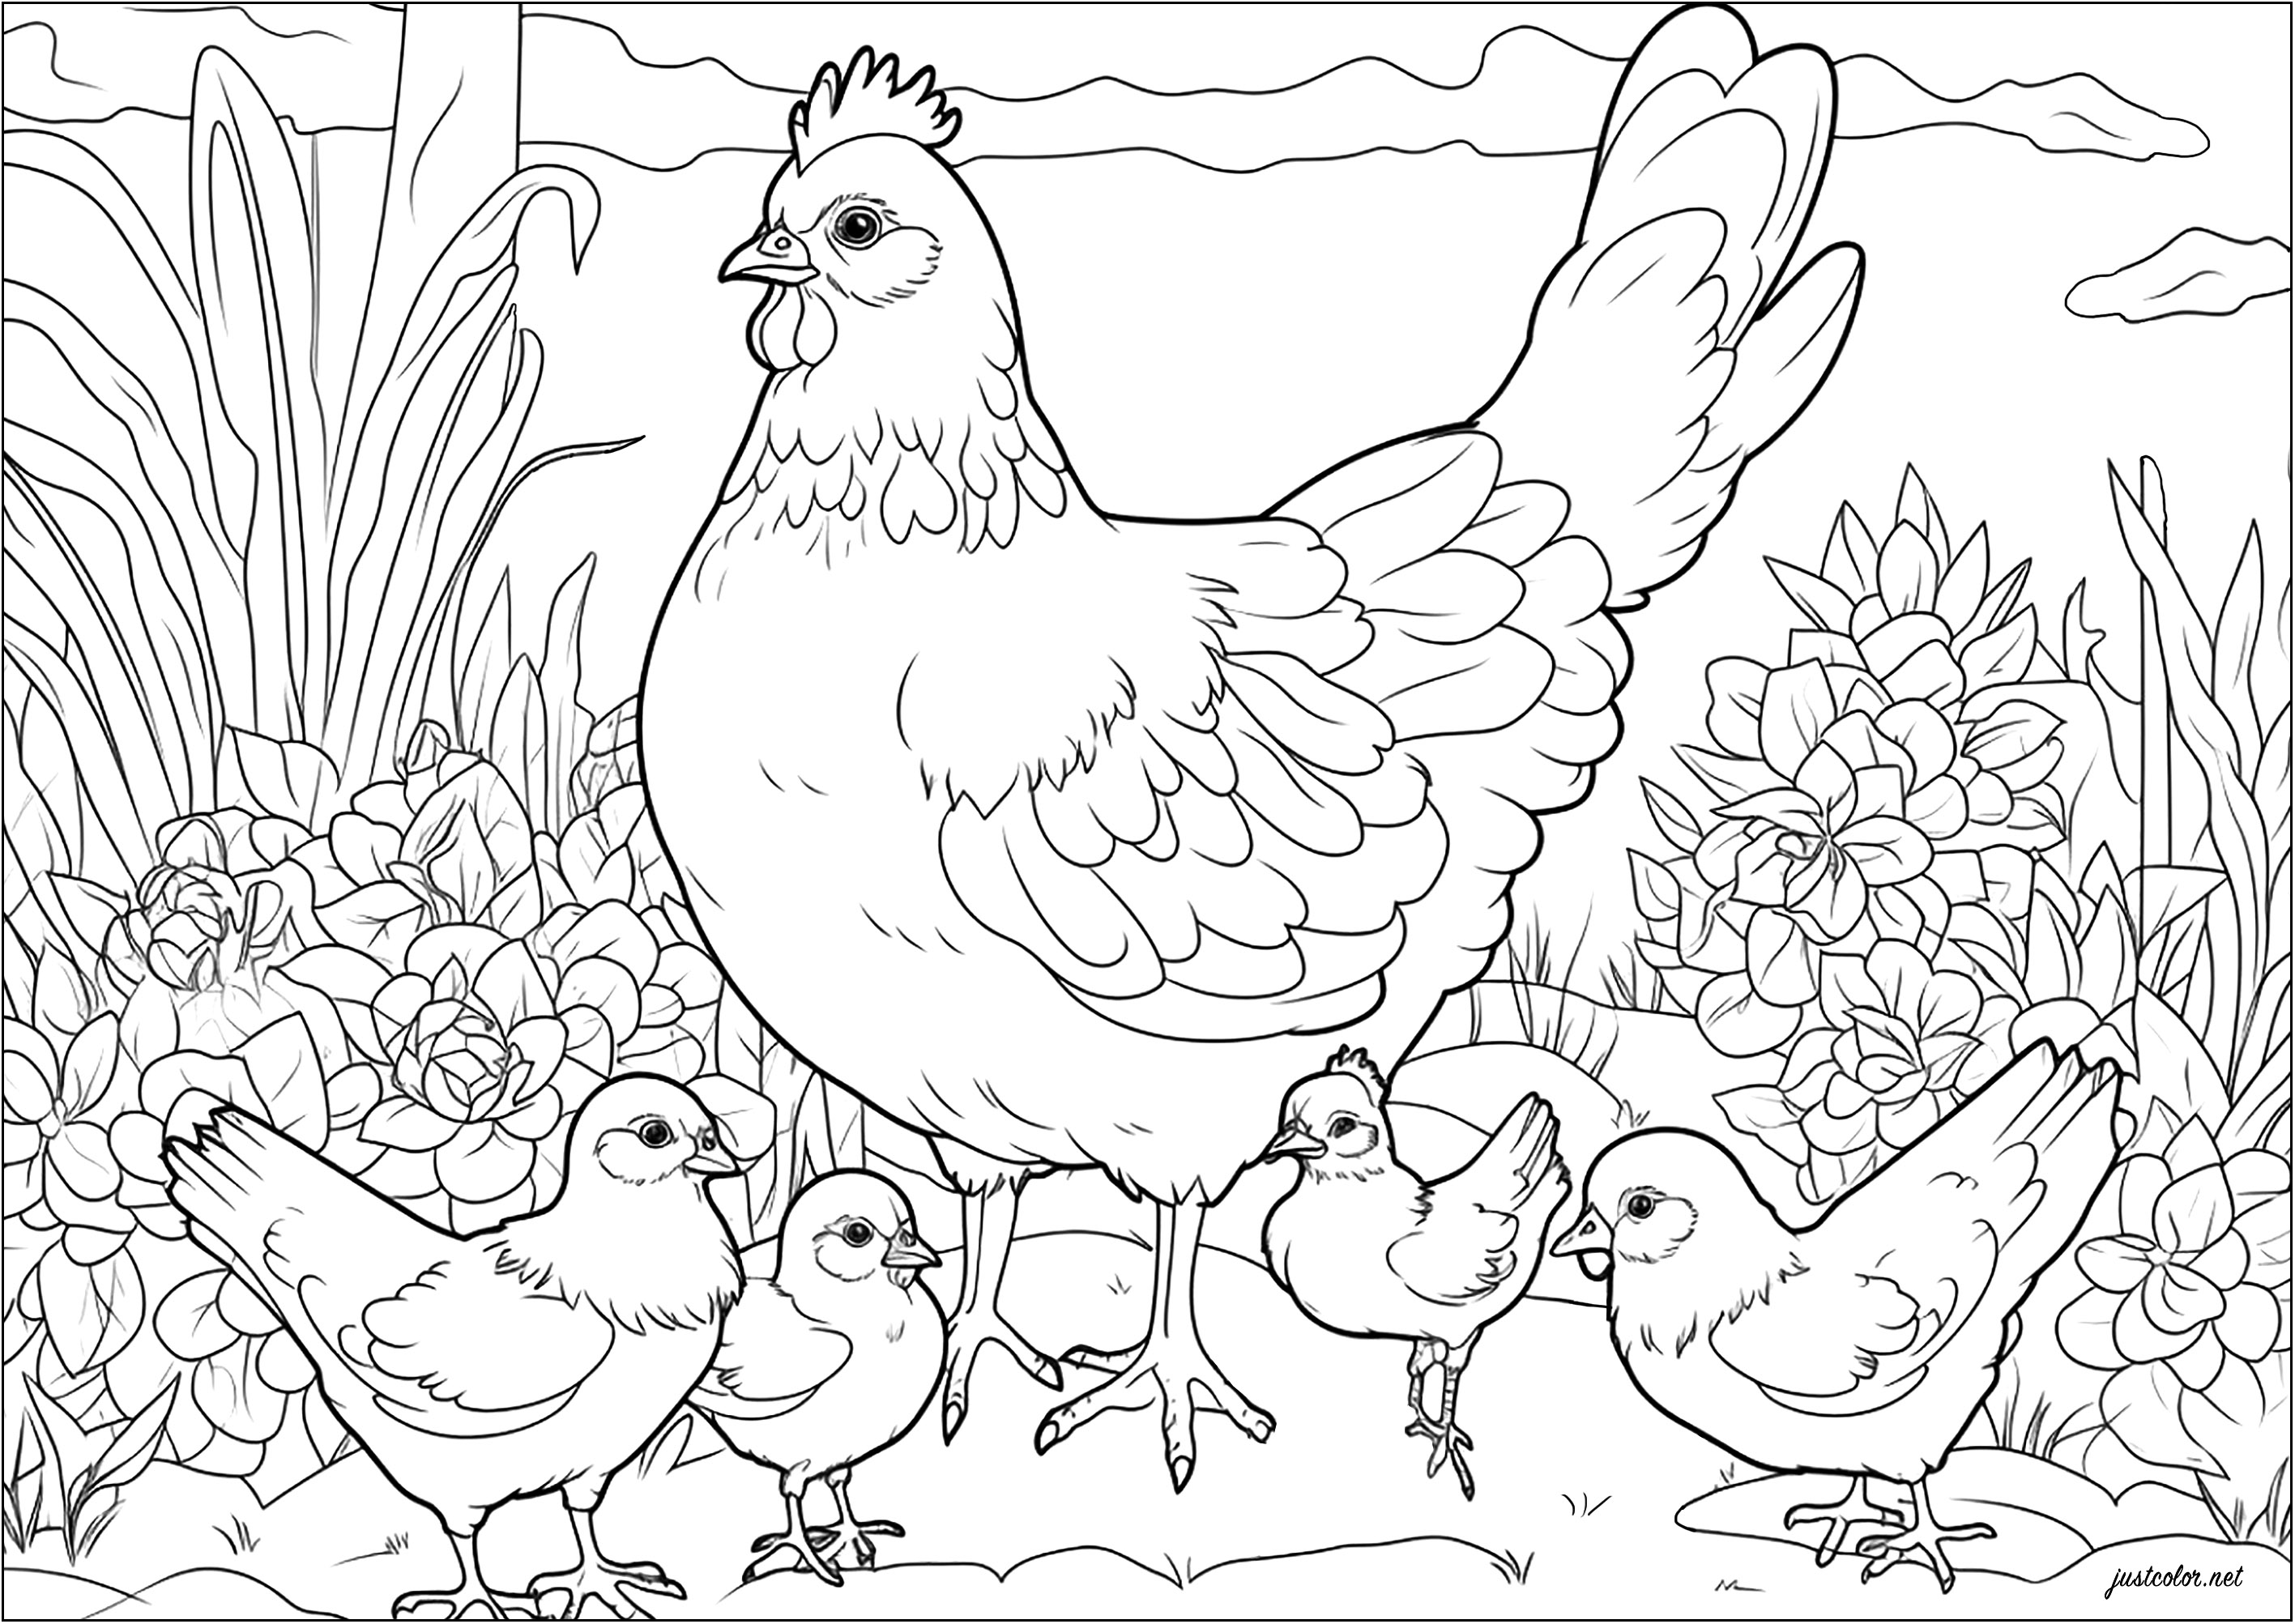 Ausmalen einer Henne und ihrer Küken. Diese Henne beschützt stolz ihre Jungen.
